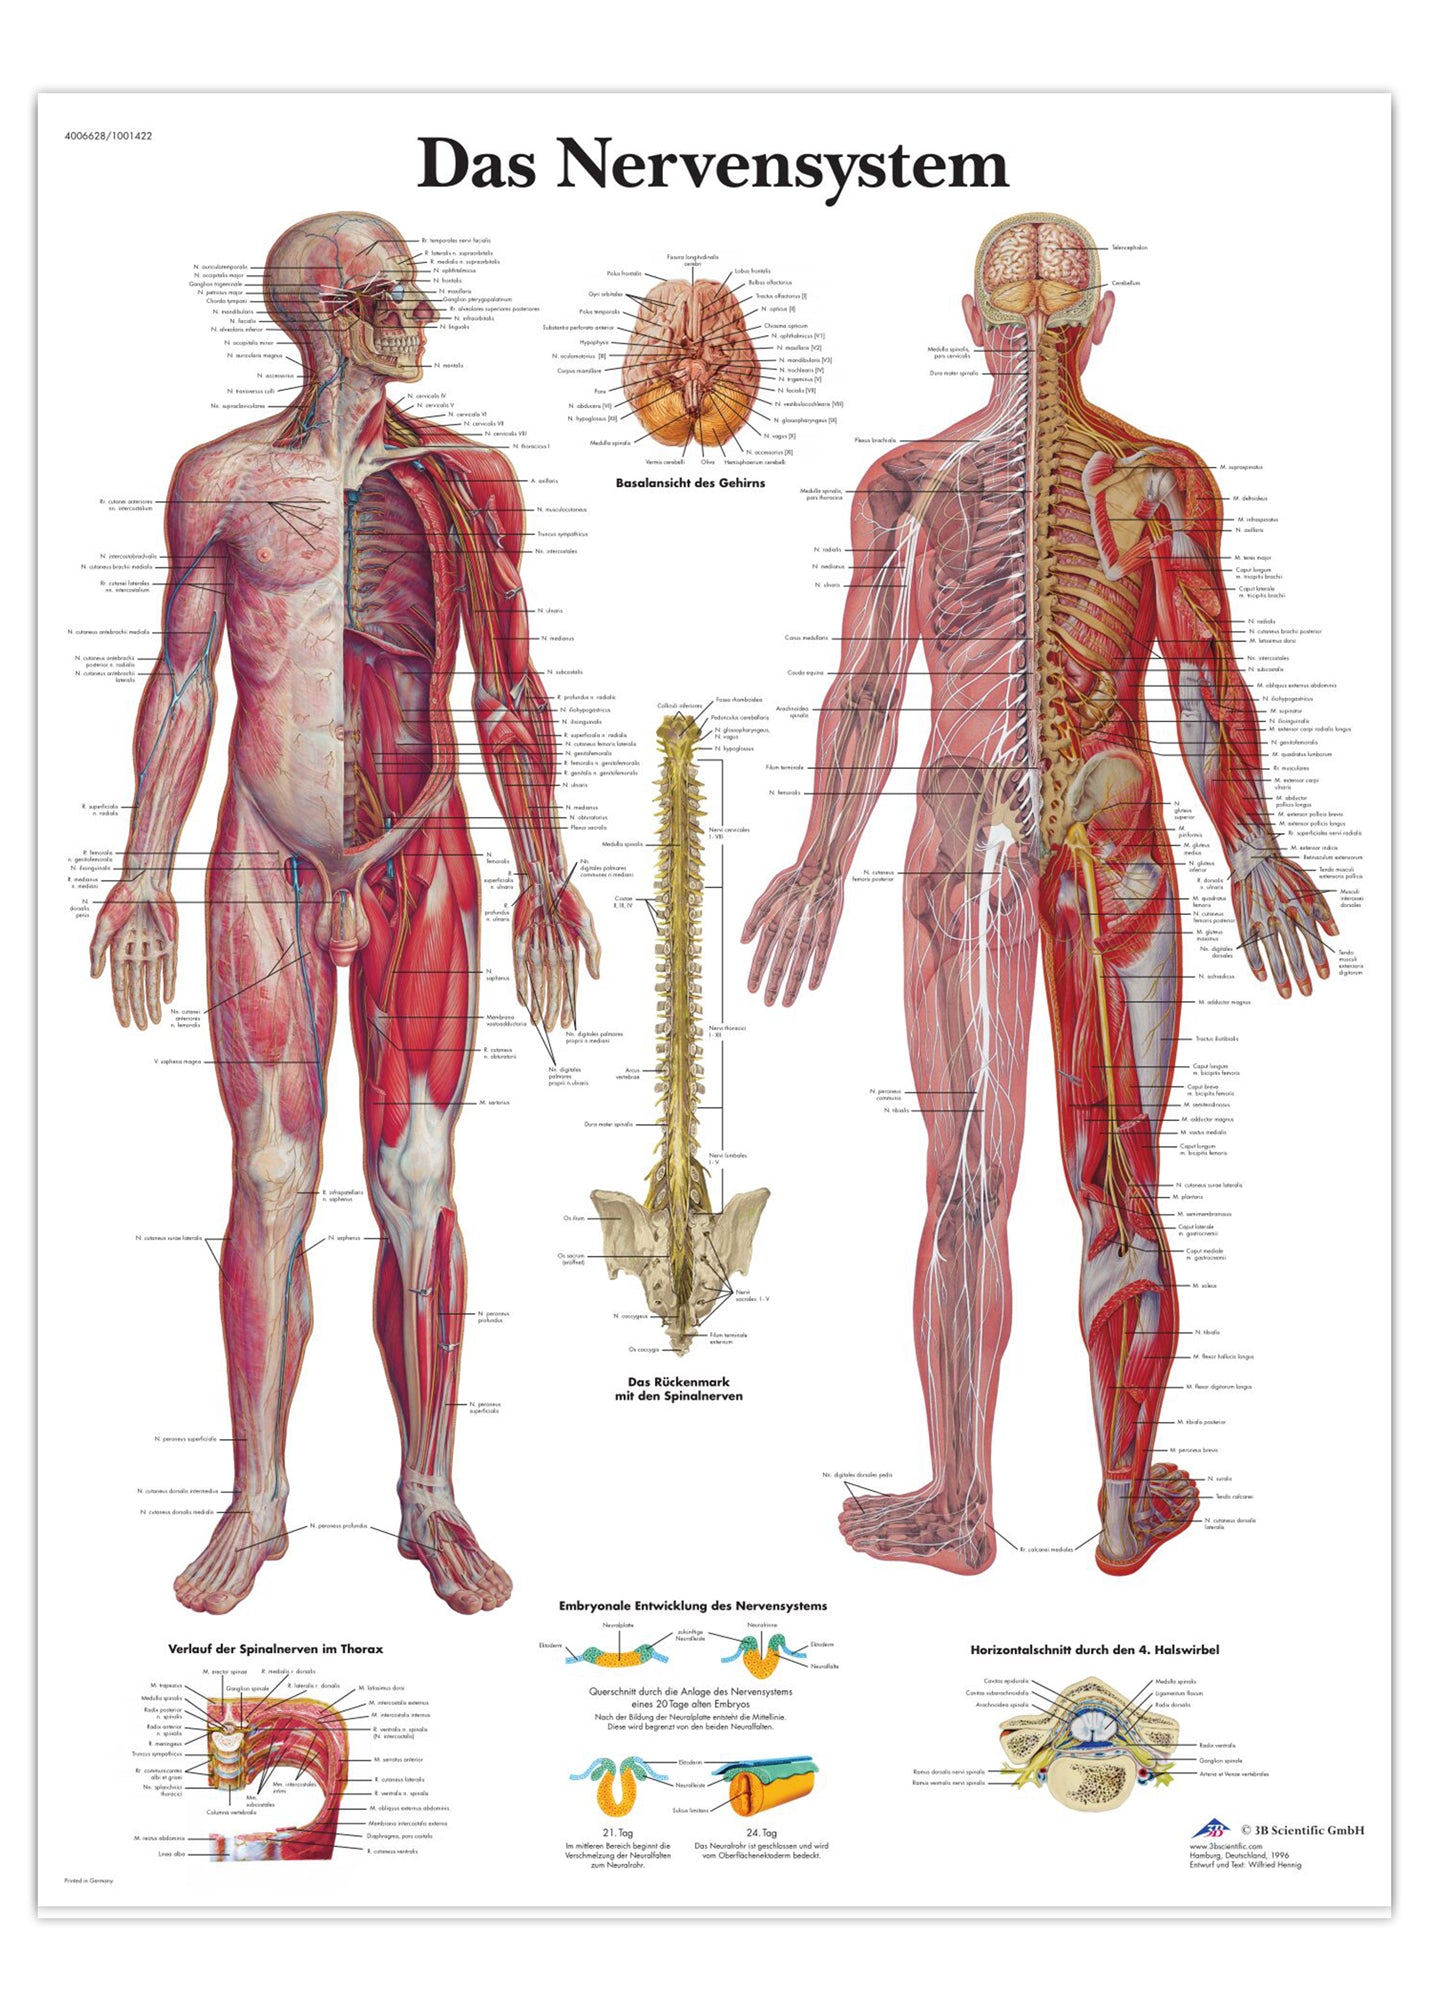 Laminerad affisch om nervsystemet på latin (men tysk titel)